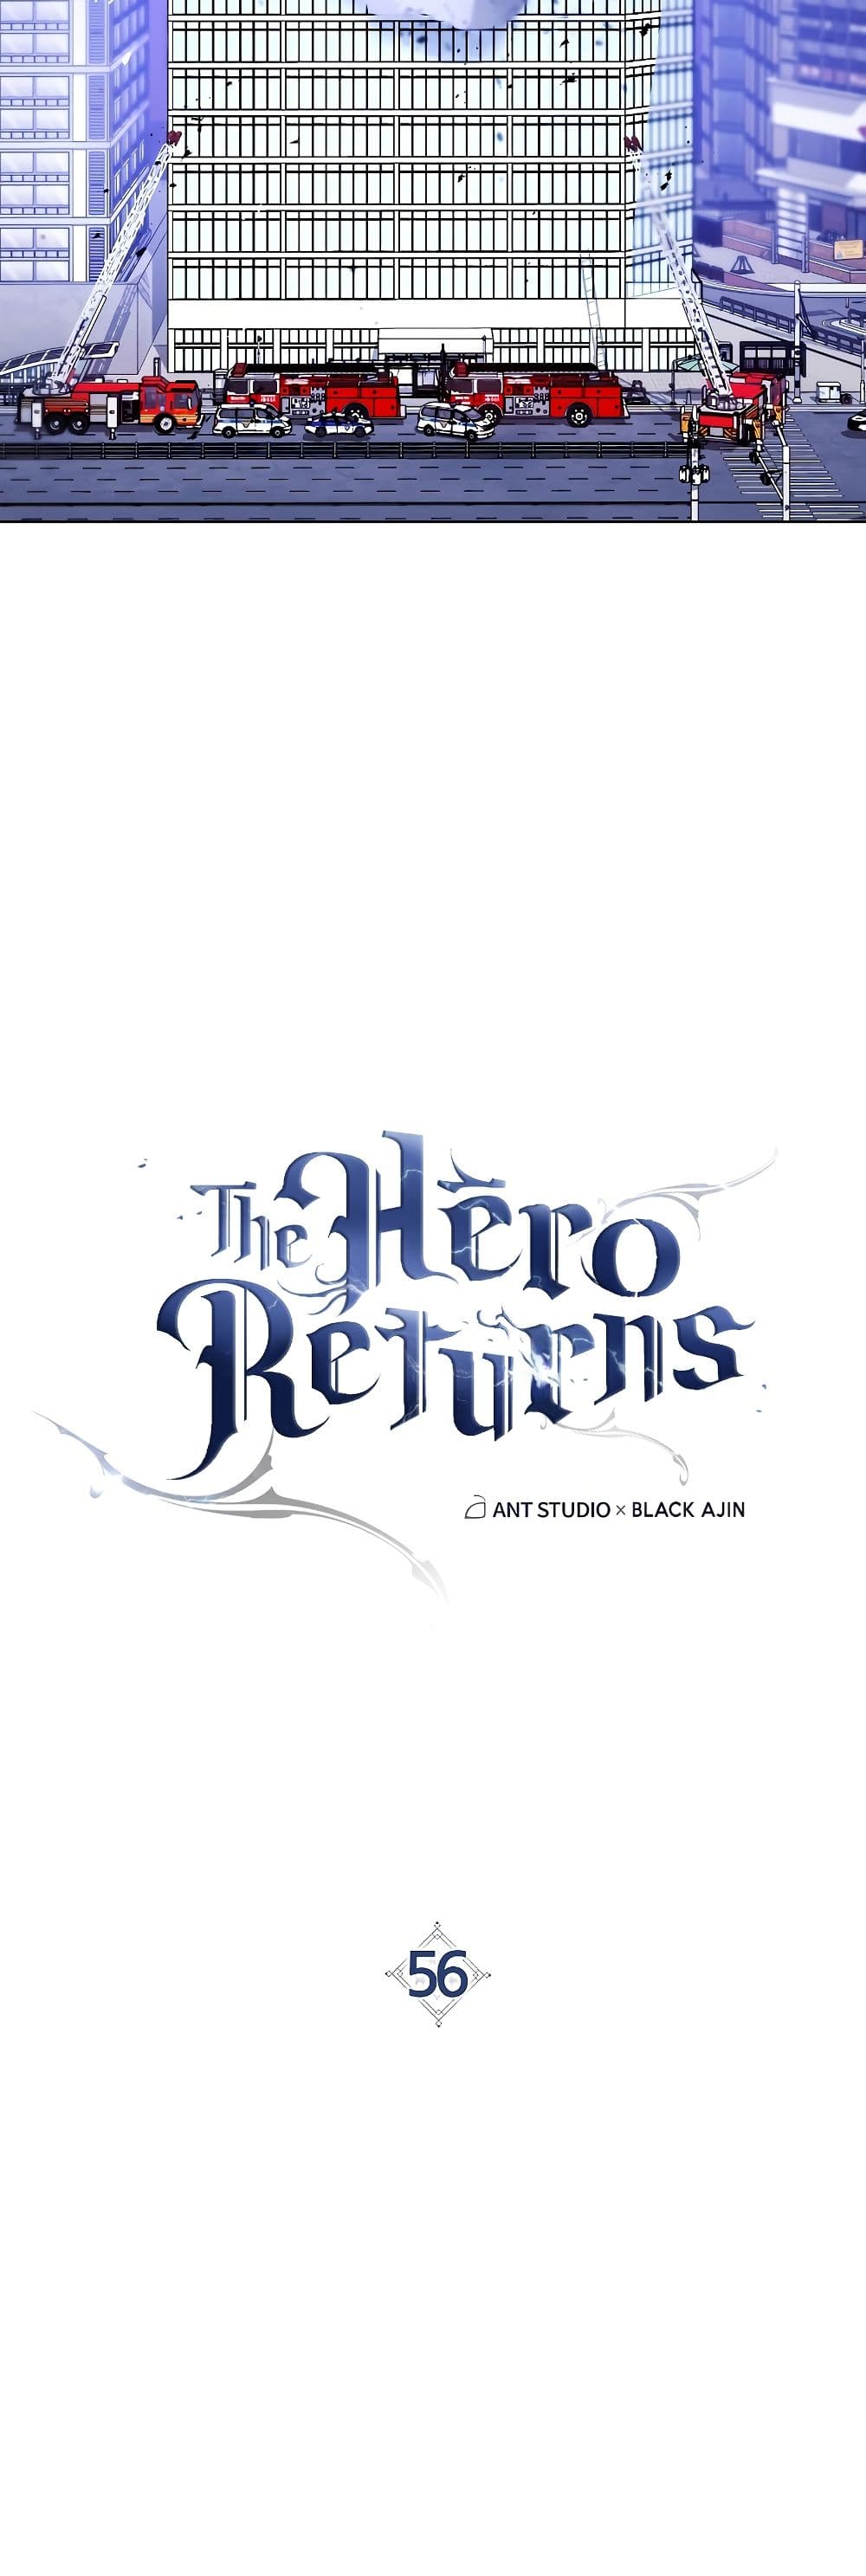 The Hero Returns 56-56